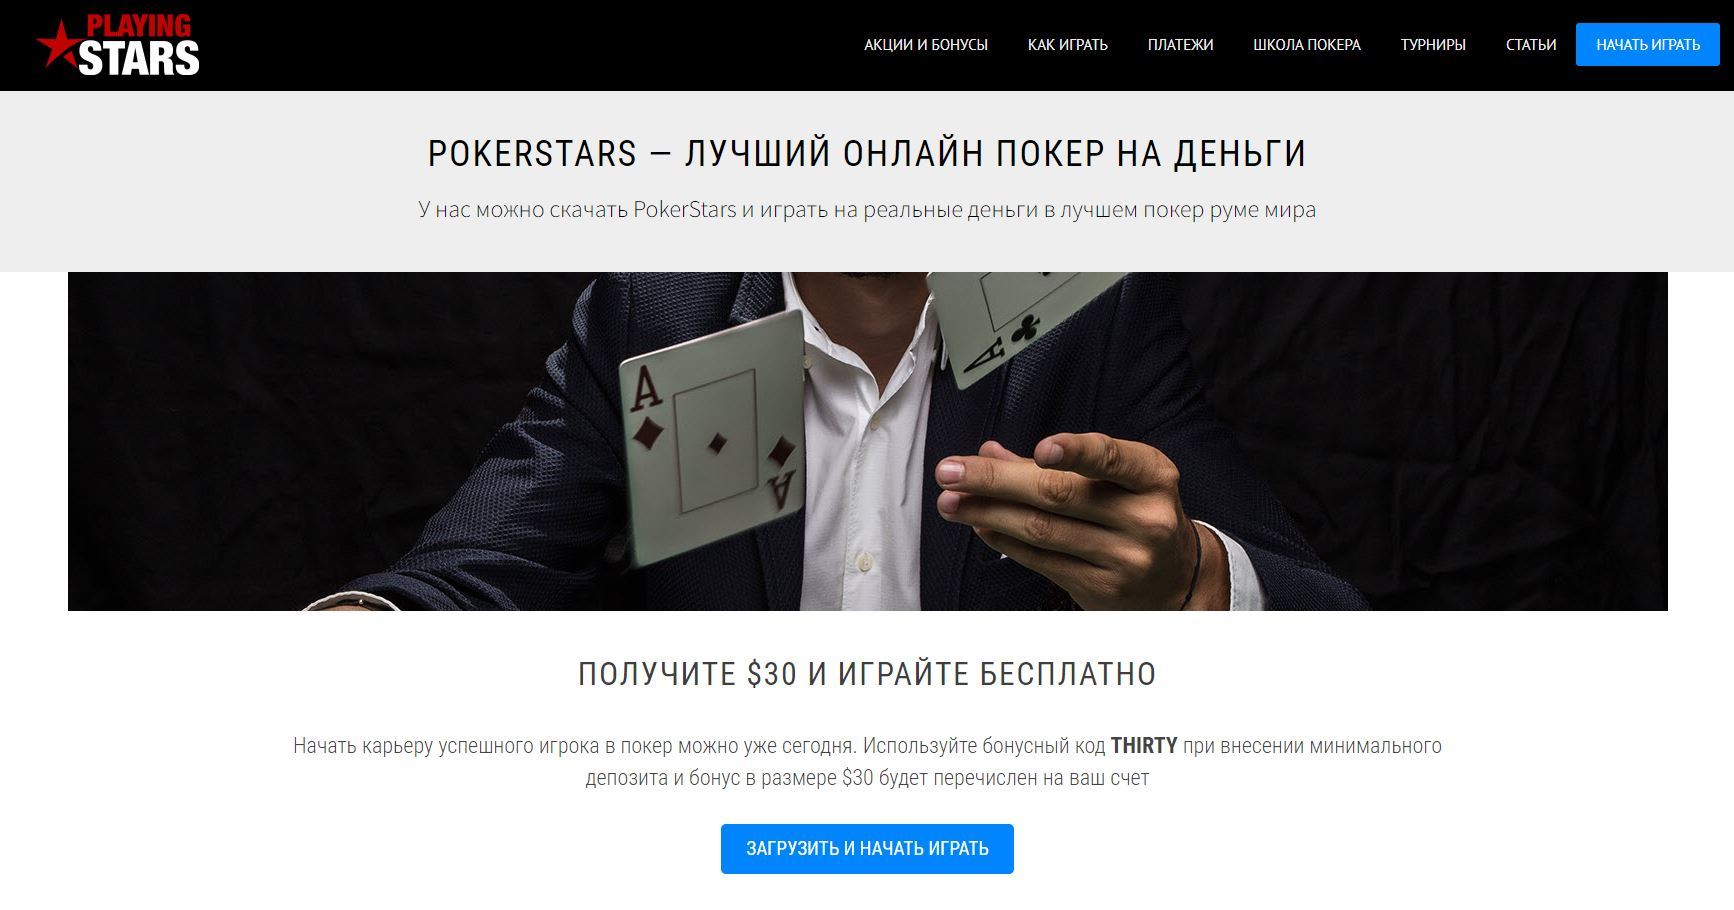 пример тематического сайта, который занимается продвижение покер рума